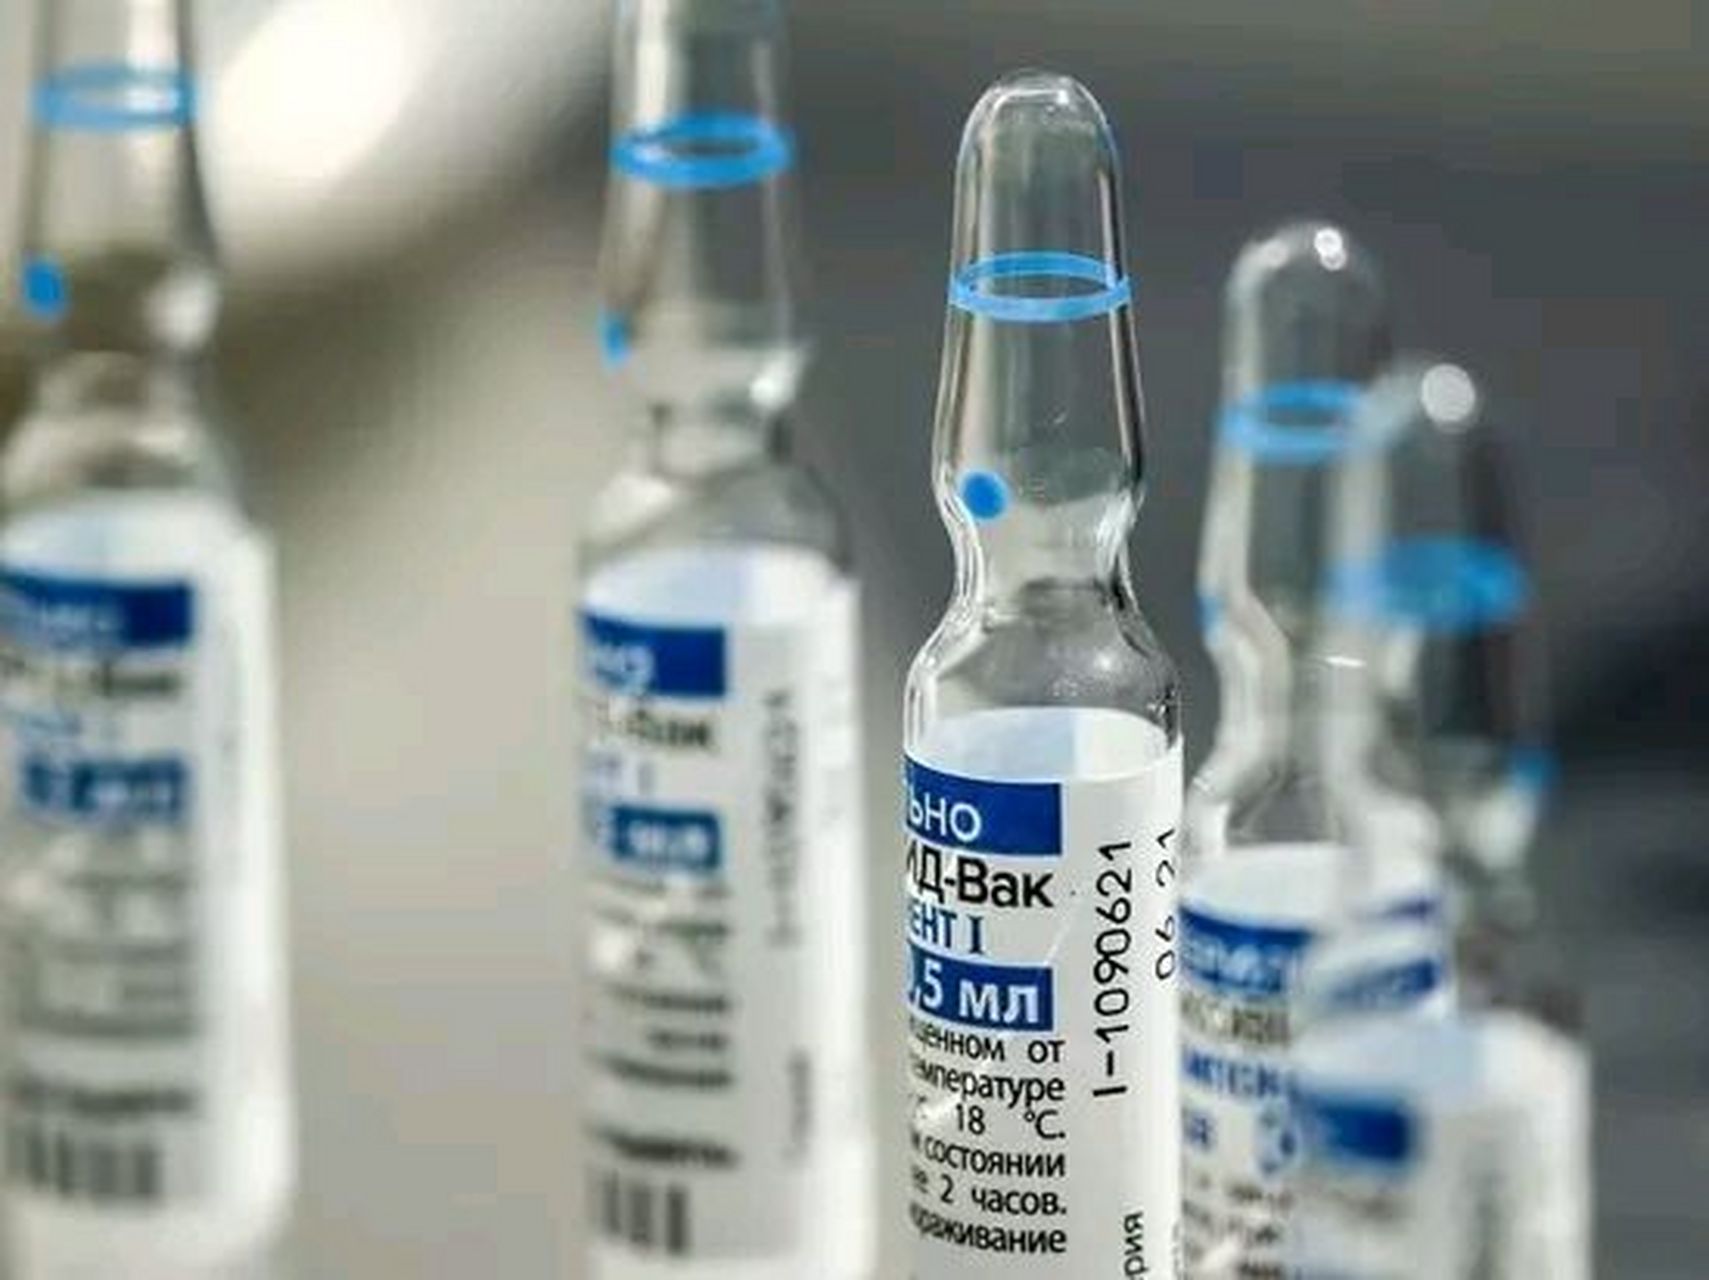 俄罗斯顶级科学家被人用皮带勒死在家中,系俄新冠疫苗研发者之一